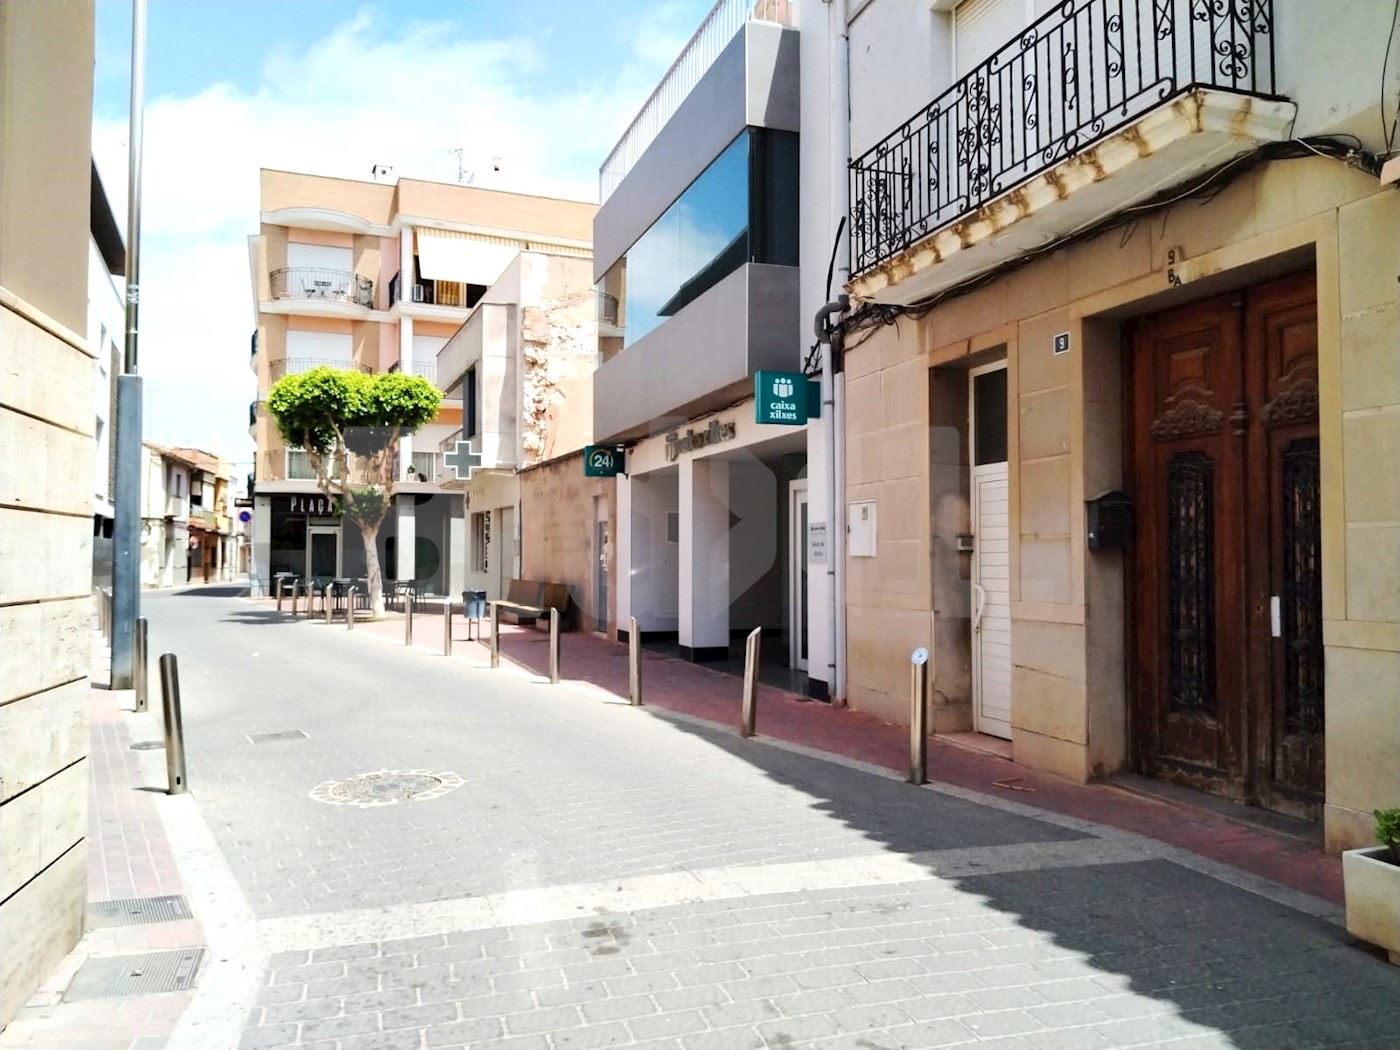 Calle España, Chilches, Castellón 1/13